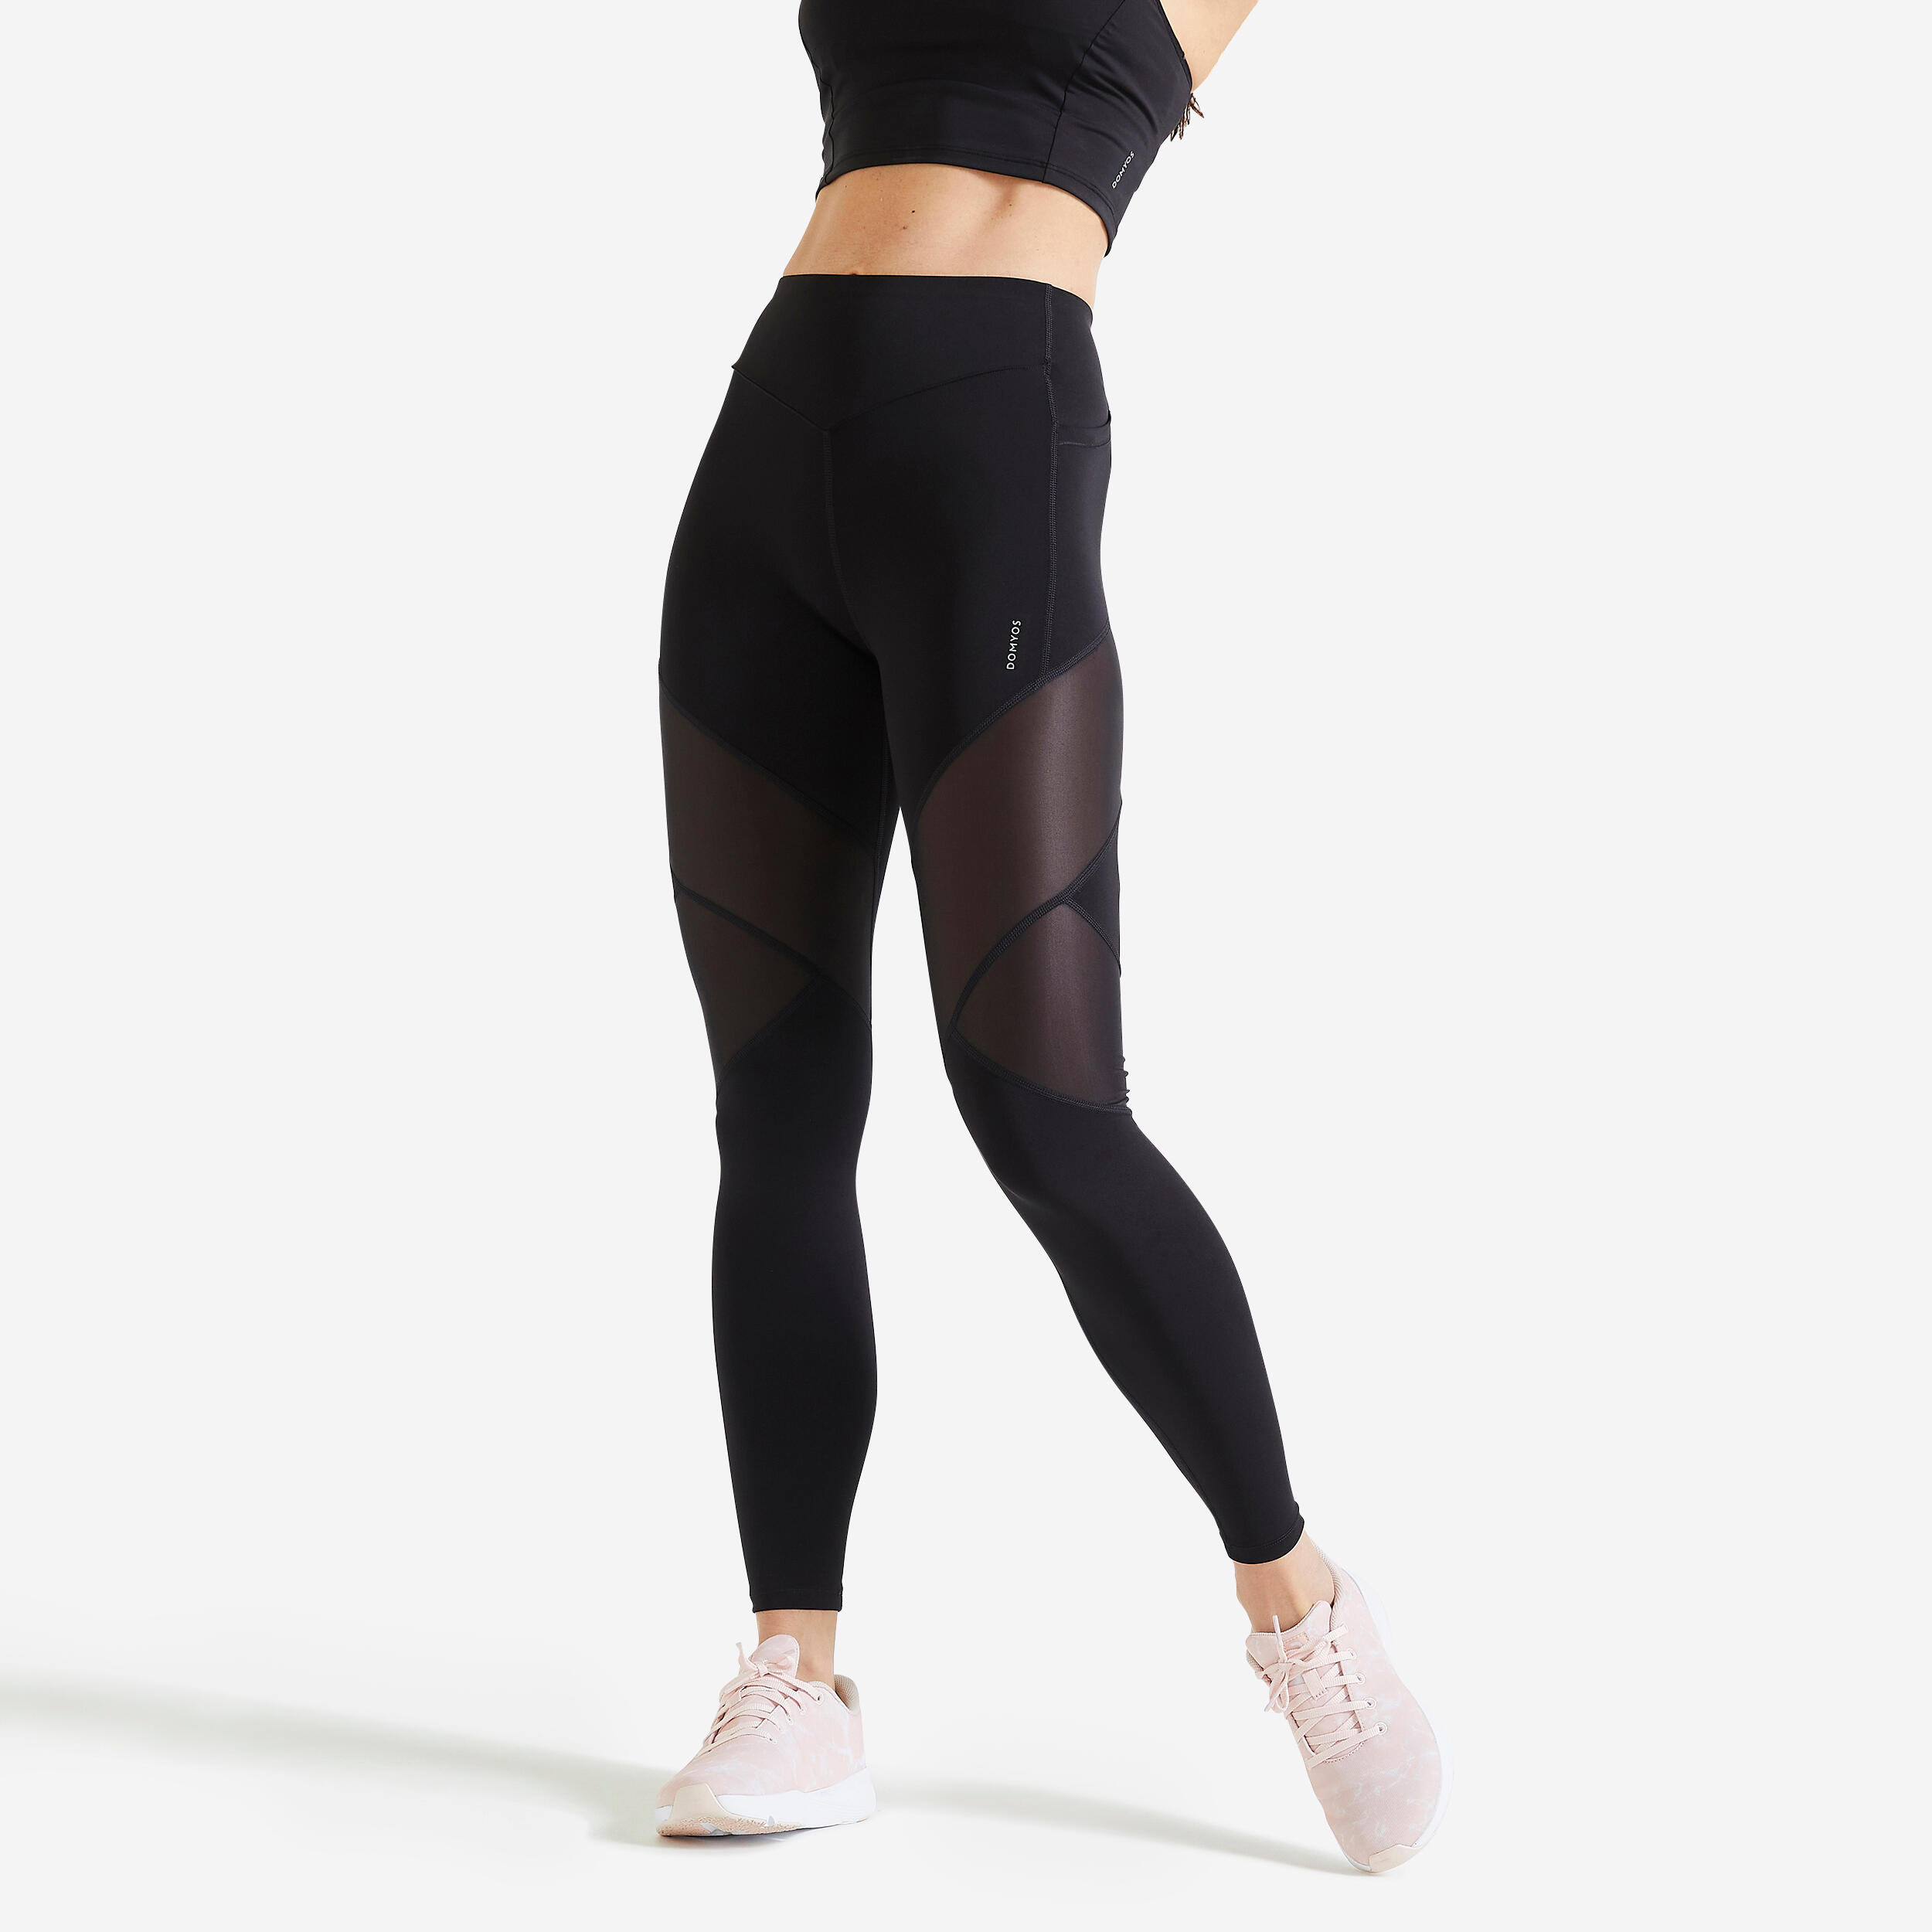 Legging sport taille haute femme – FTI 500 noir